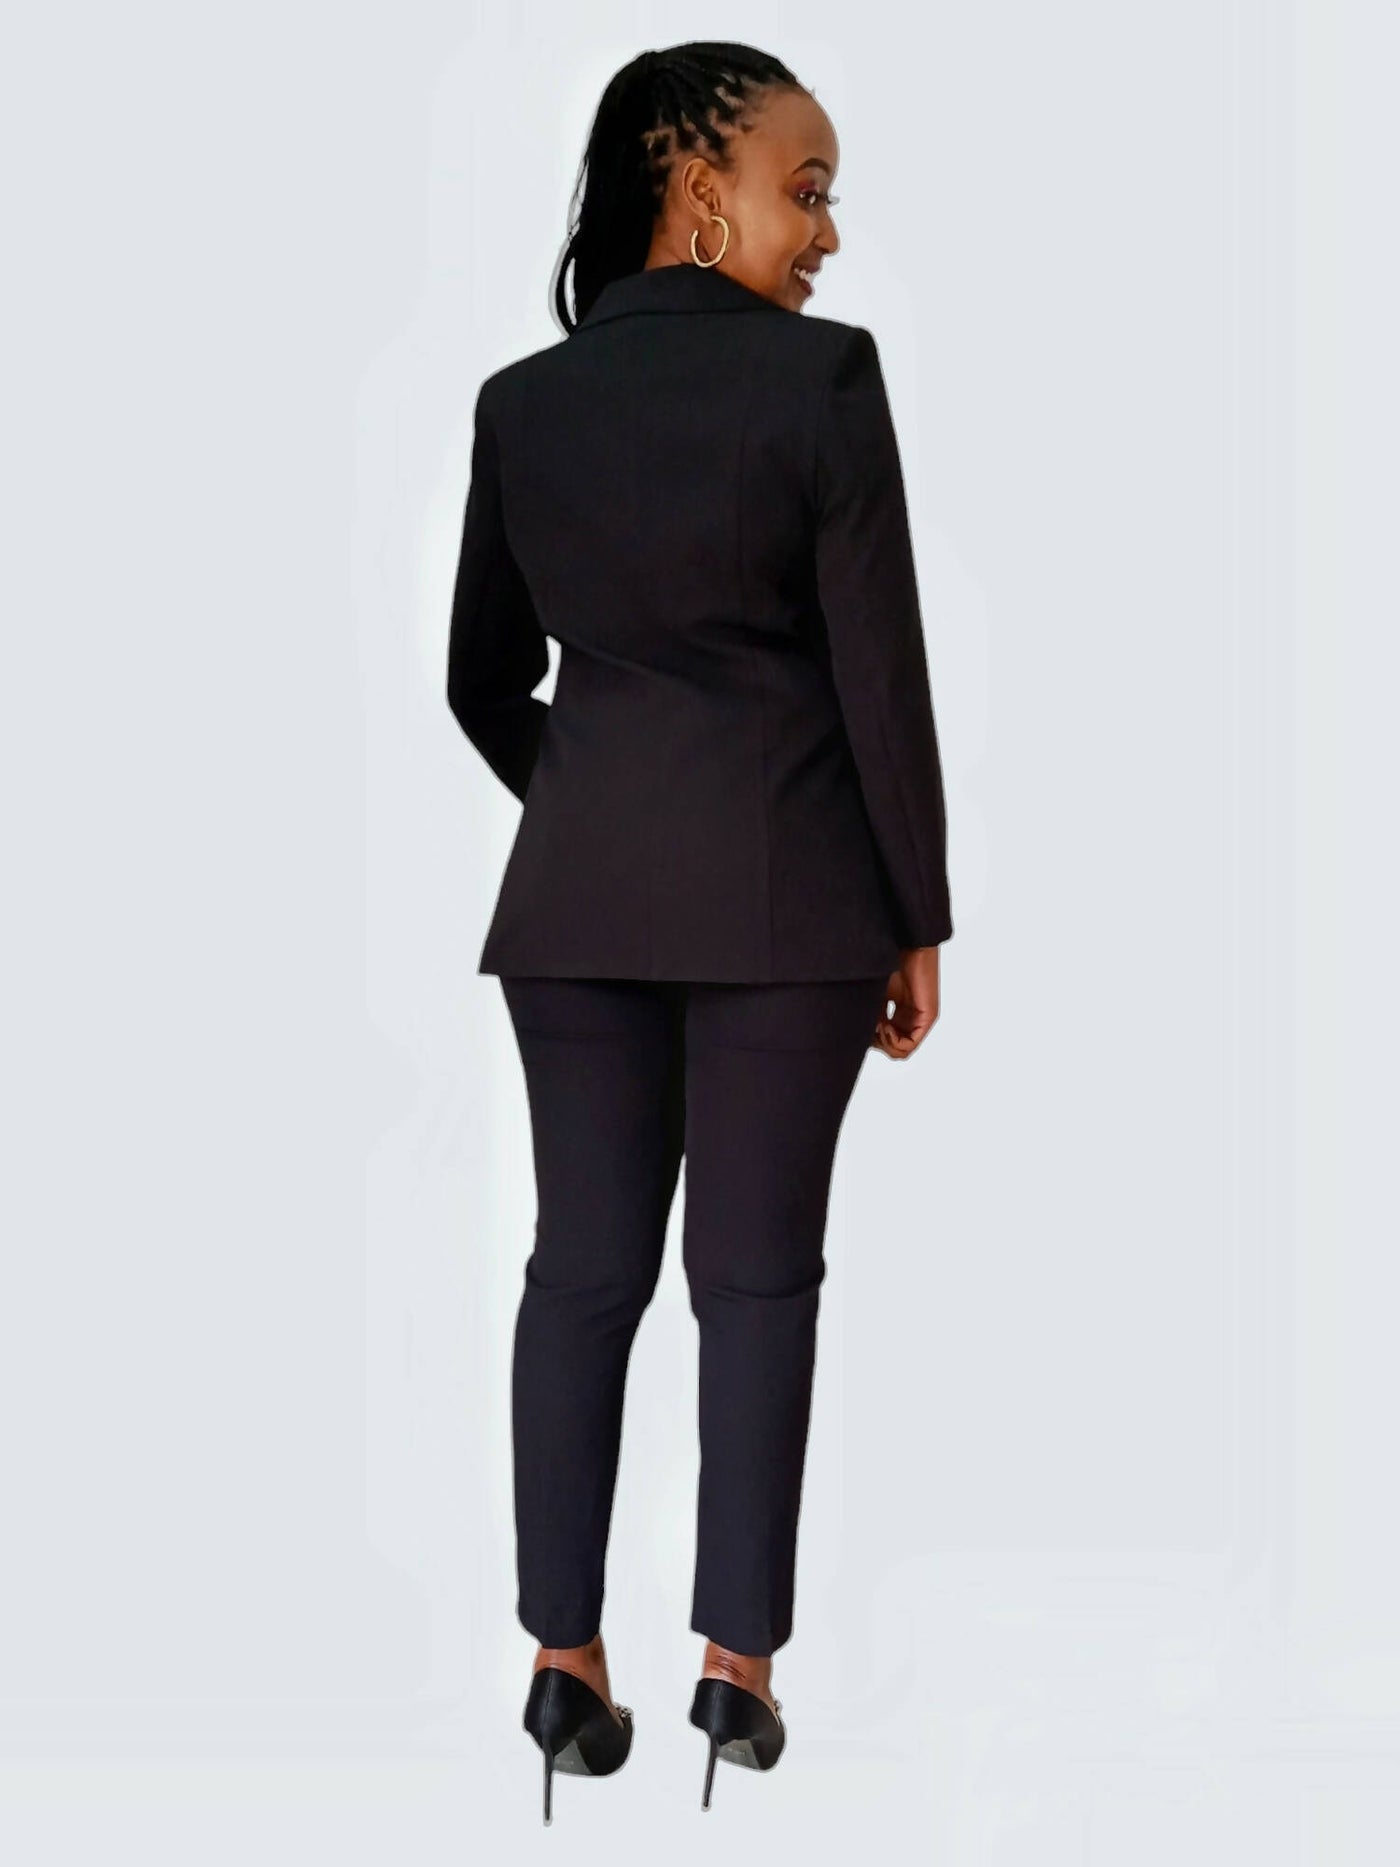 The Fashion Frenzy Pant Suit - Black - Shopzetu